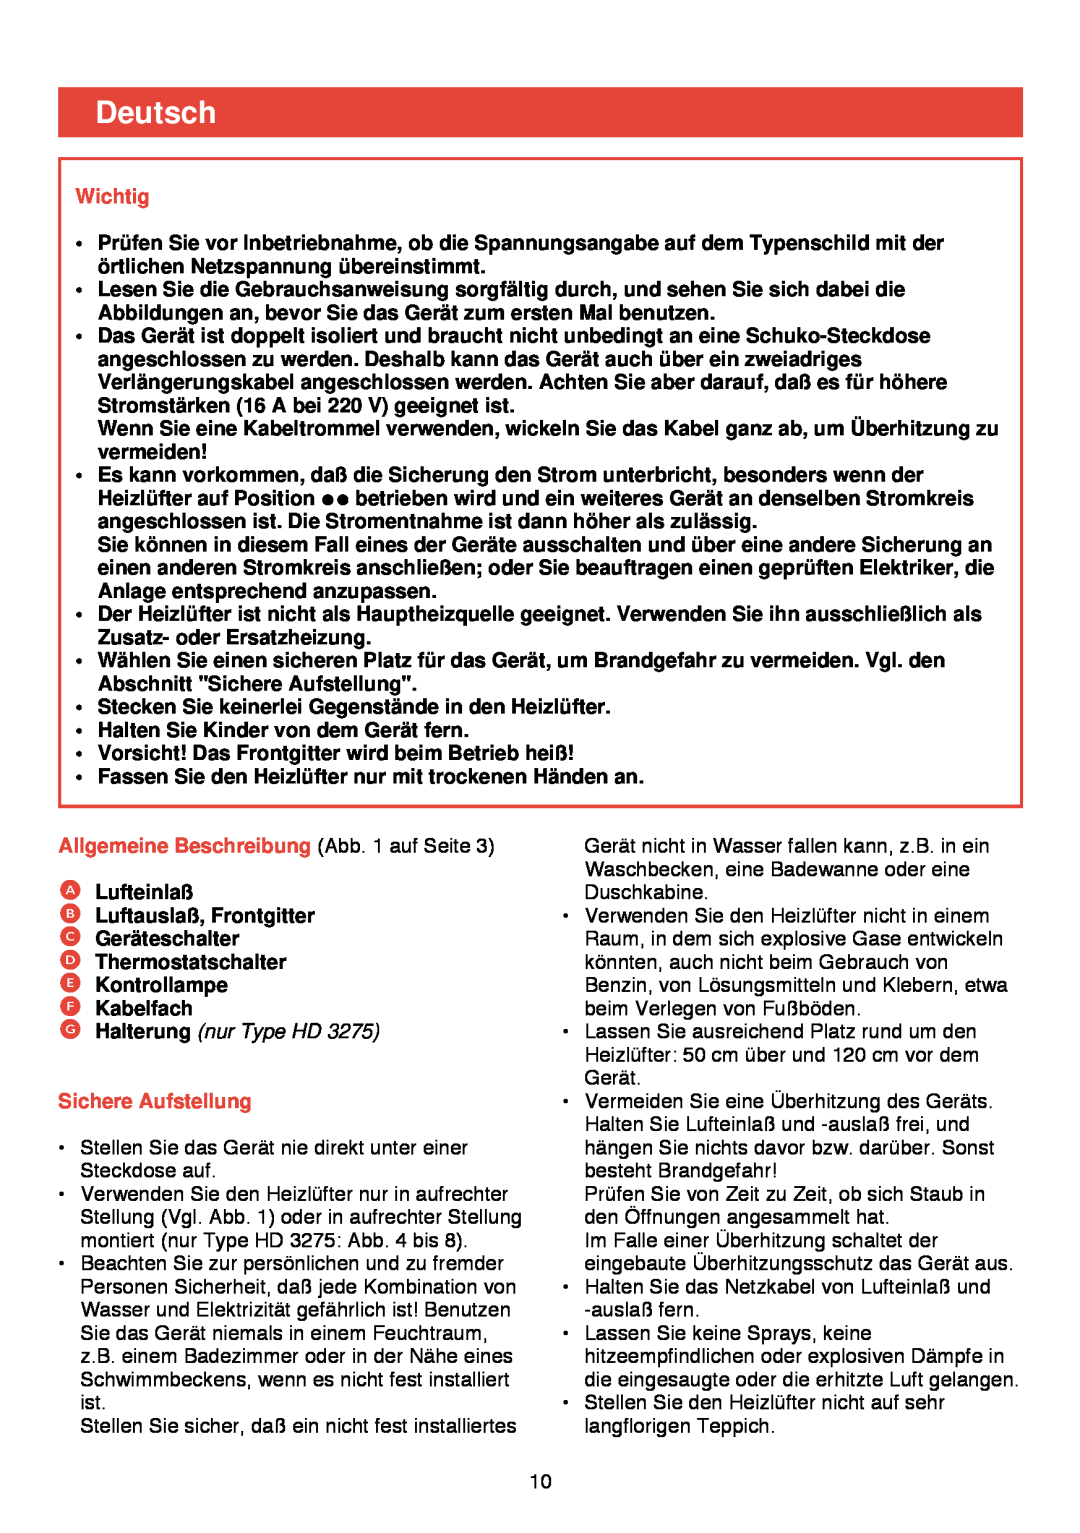 Philips HD 3274/75 manual Deutsch, Wichtig, Allgemeine Beschreibung Abb. 1 auf Seite, G Halterung nur Type HD 